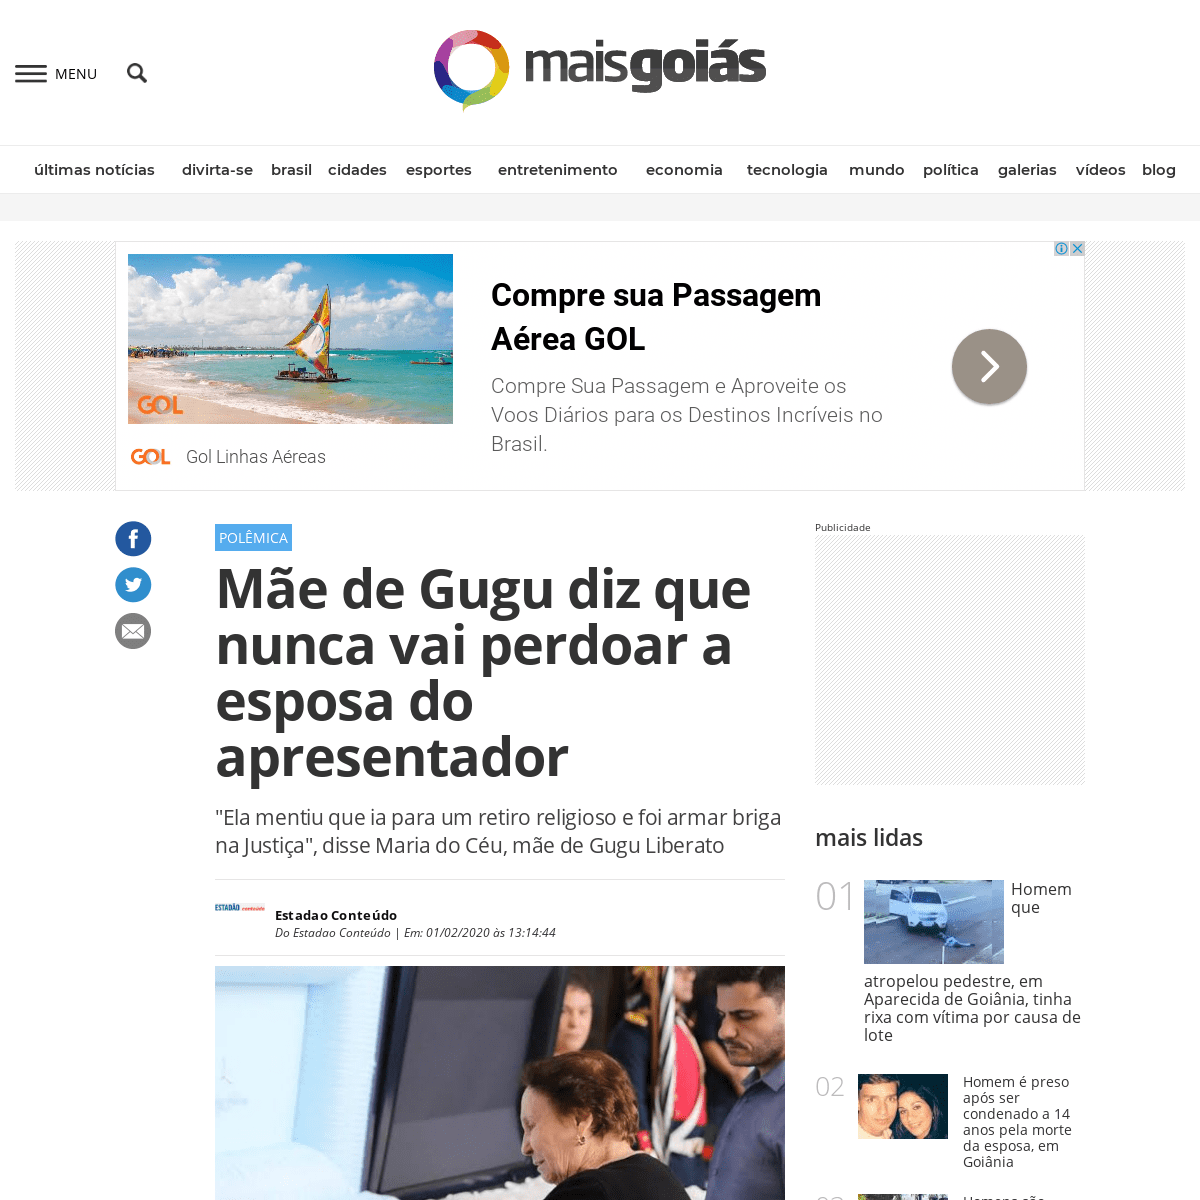 A complete backup of www.emaisgoias.com.br/mae-de-gugu-diz-que-nunca-vai-perdoar-a-esposa-do-apresentador/